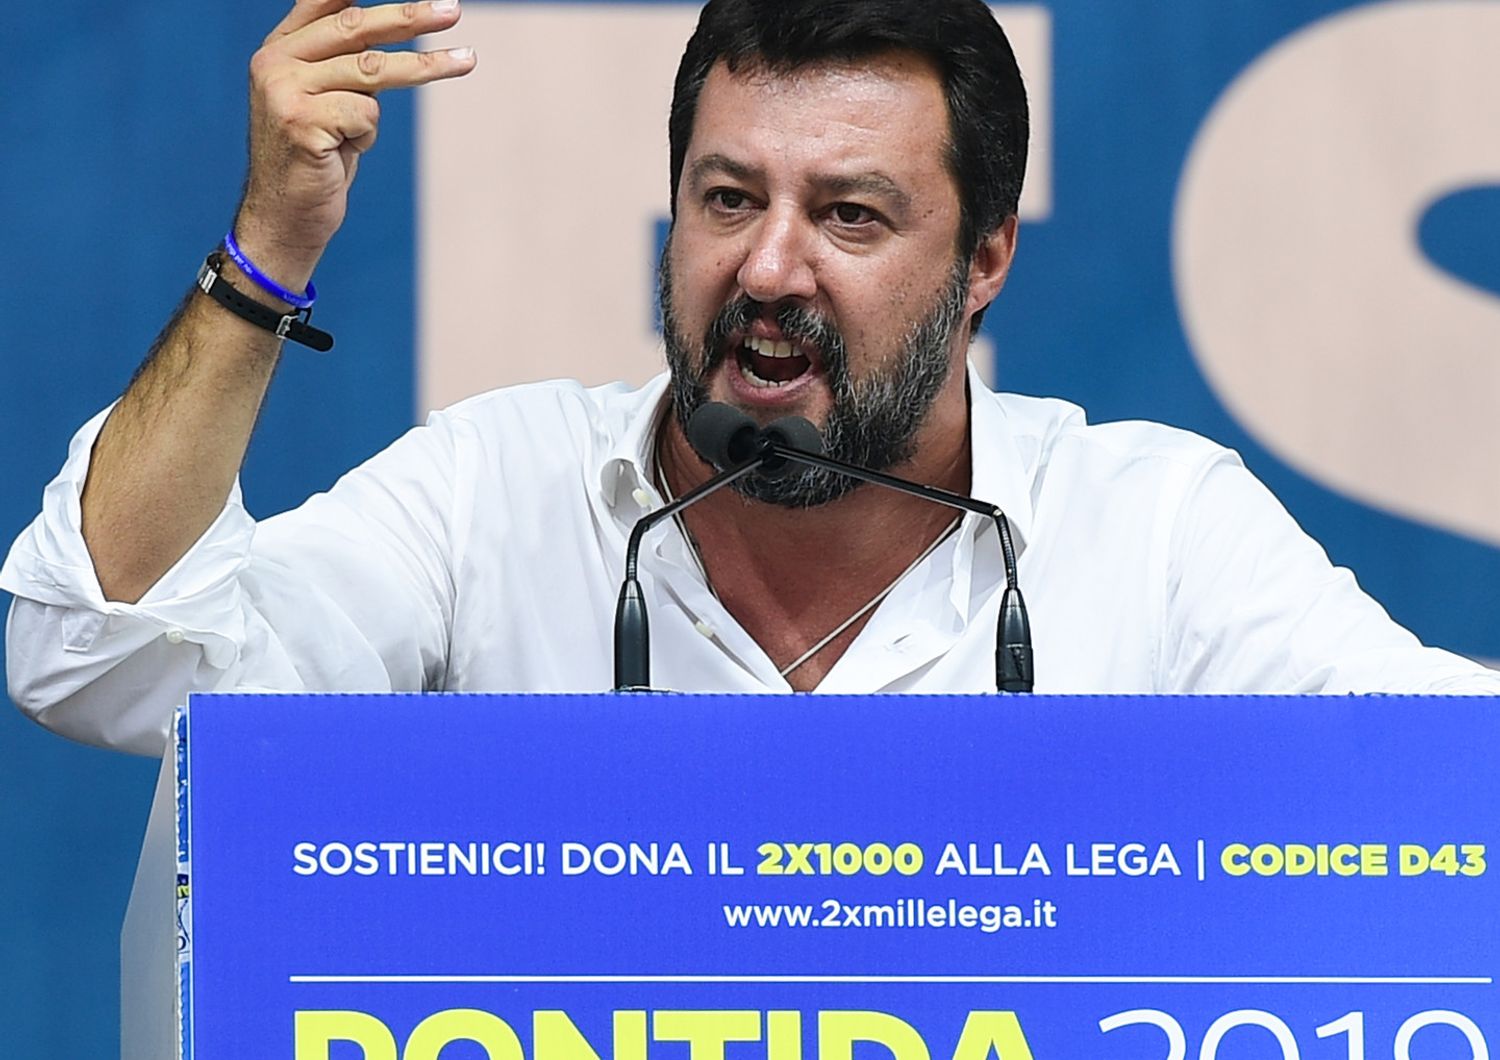 Matteo Salvini, Pontida 2019&nbsp;